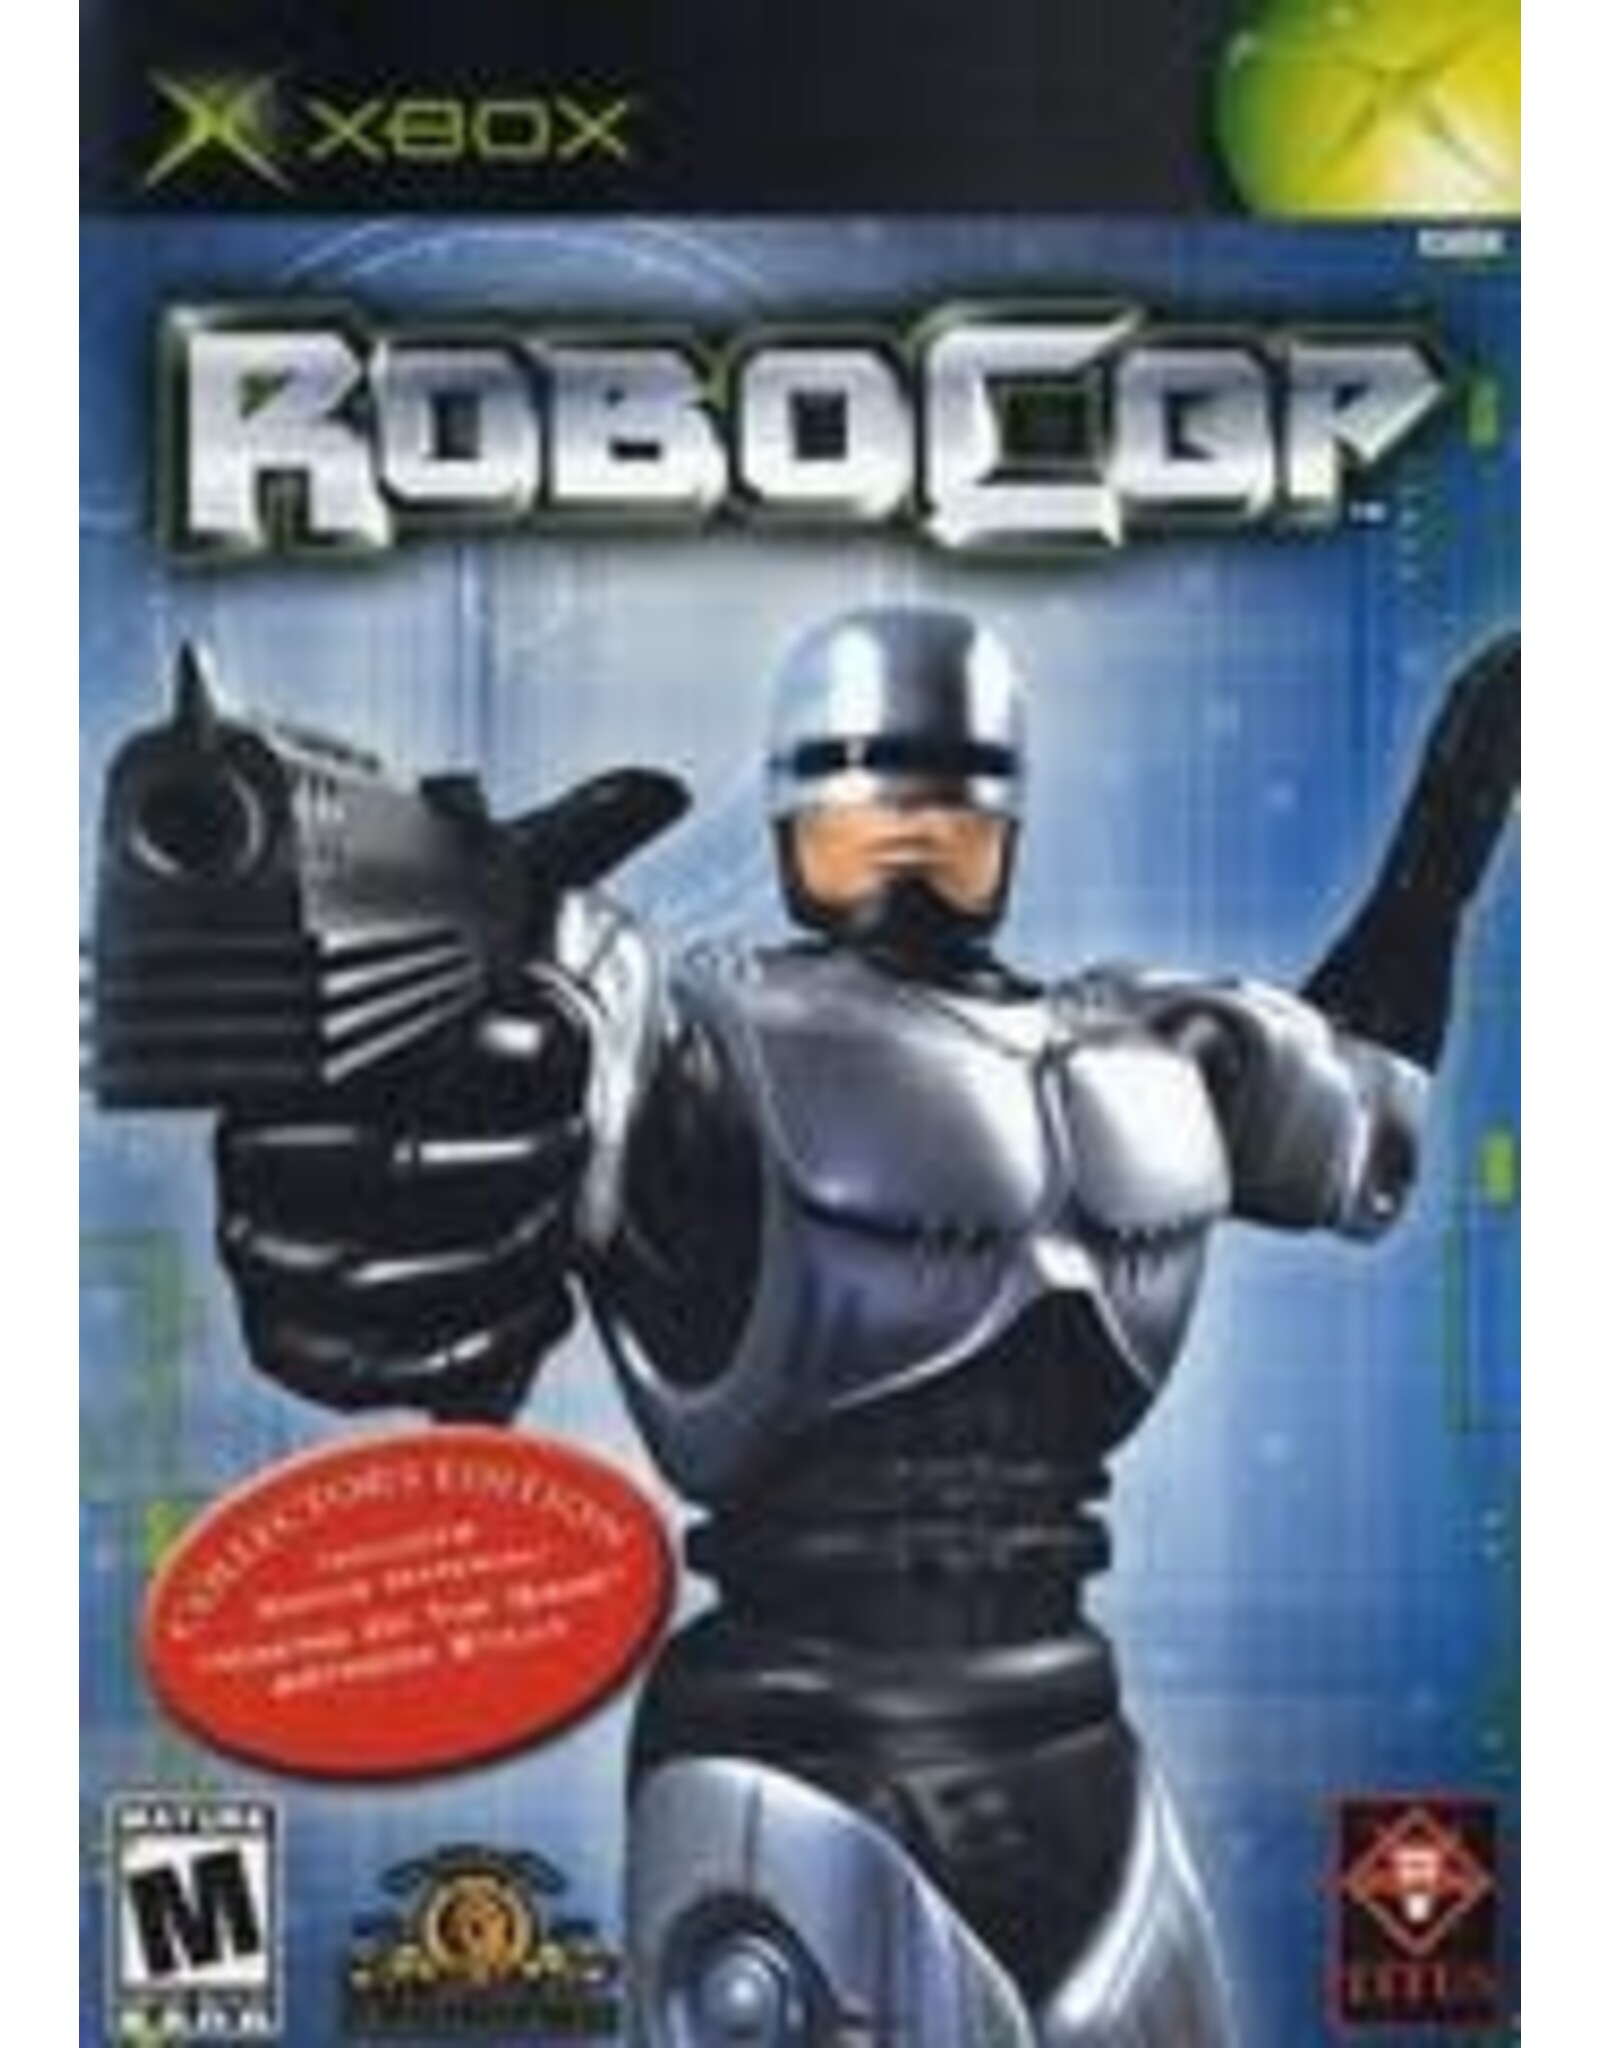 Xbox RoboCop (CiB)